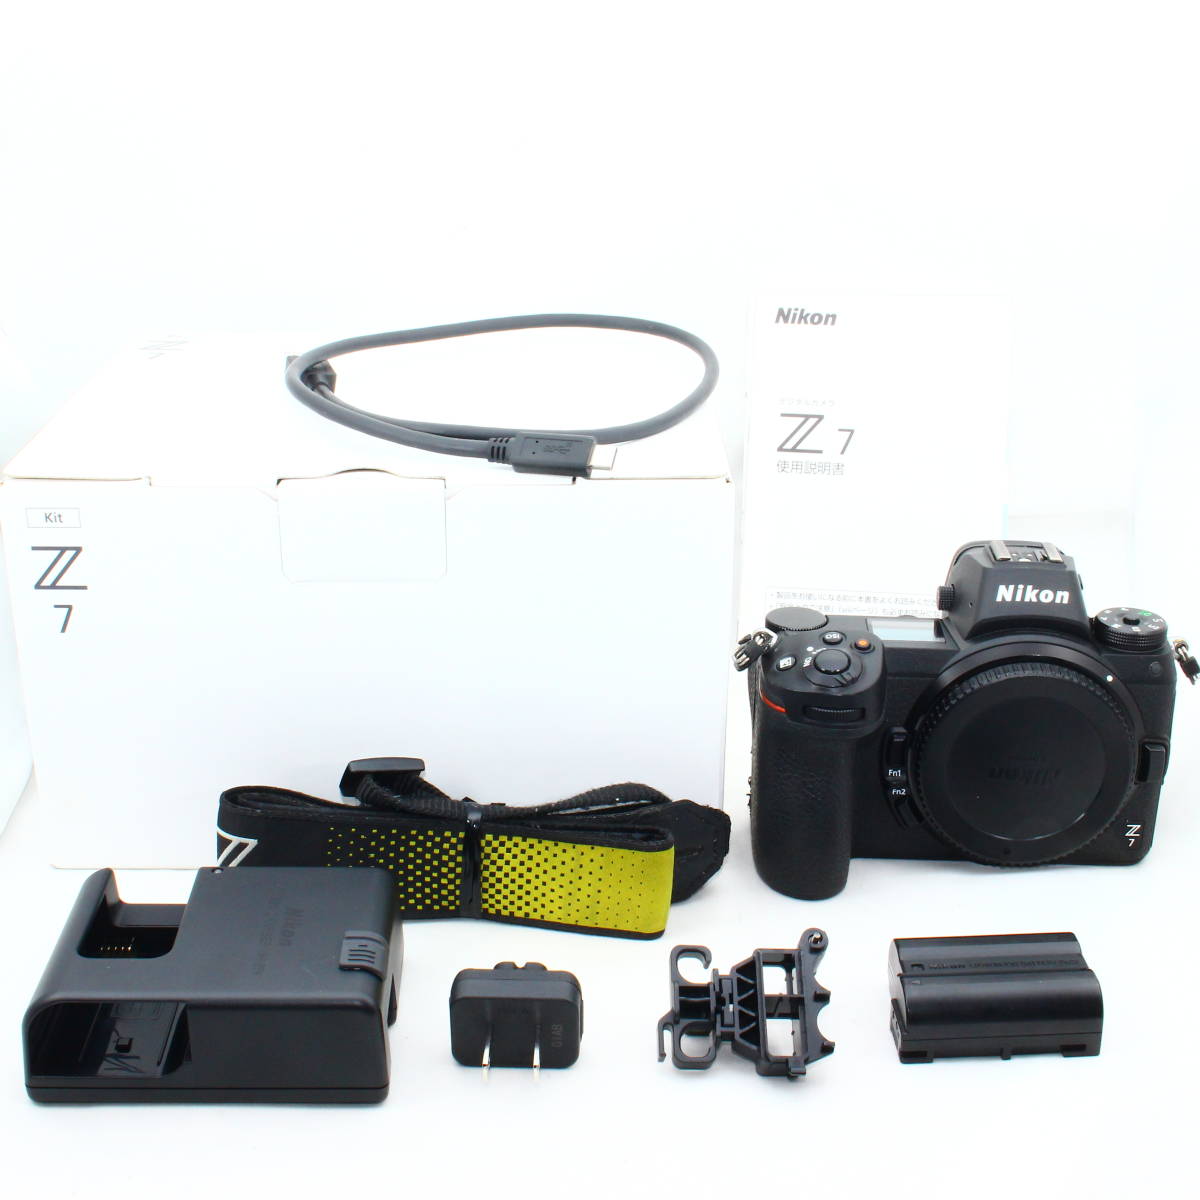 Nikon ミラーレスカメラ 一眼 Z7 ボディ #2402028の画像1